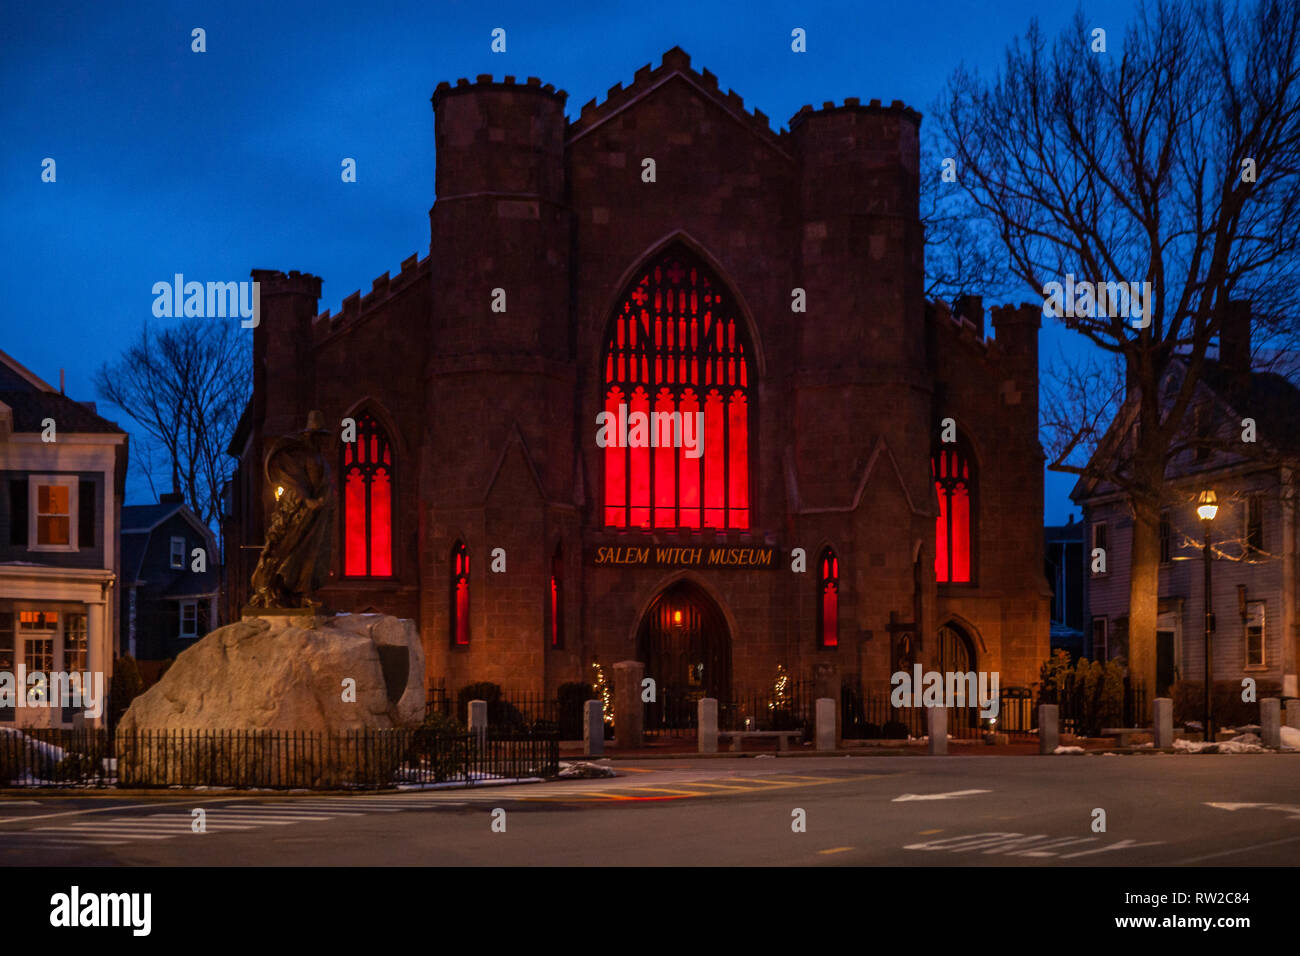 Dieses berühmten Museum befindet sich in einem gotischen Stil, New England Kirche art Gebäude und ist beliebt bei den Bürgern und Touristen. Stockfoto